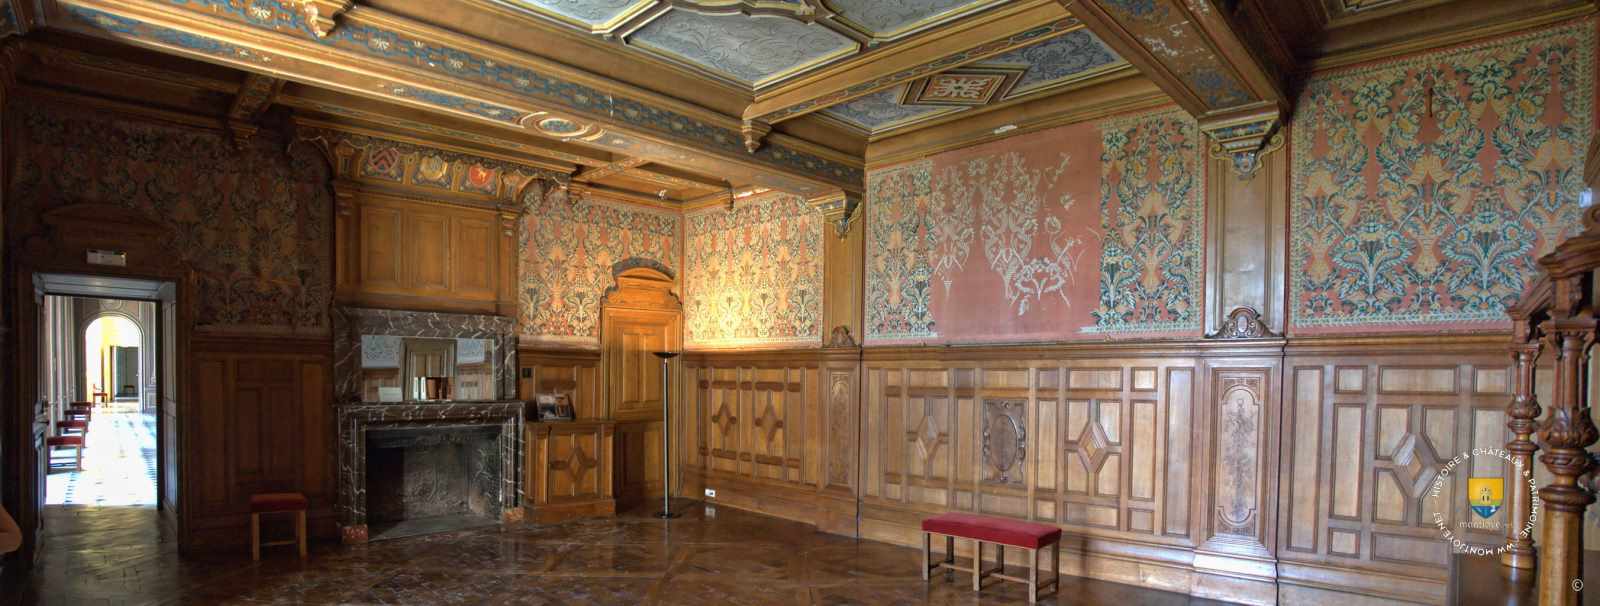 Intérieur de Château Guyon